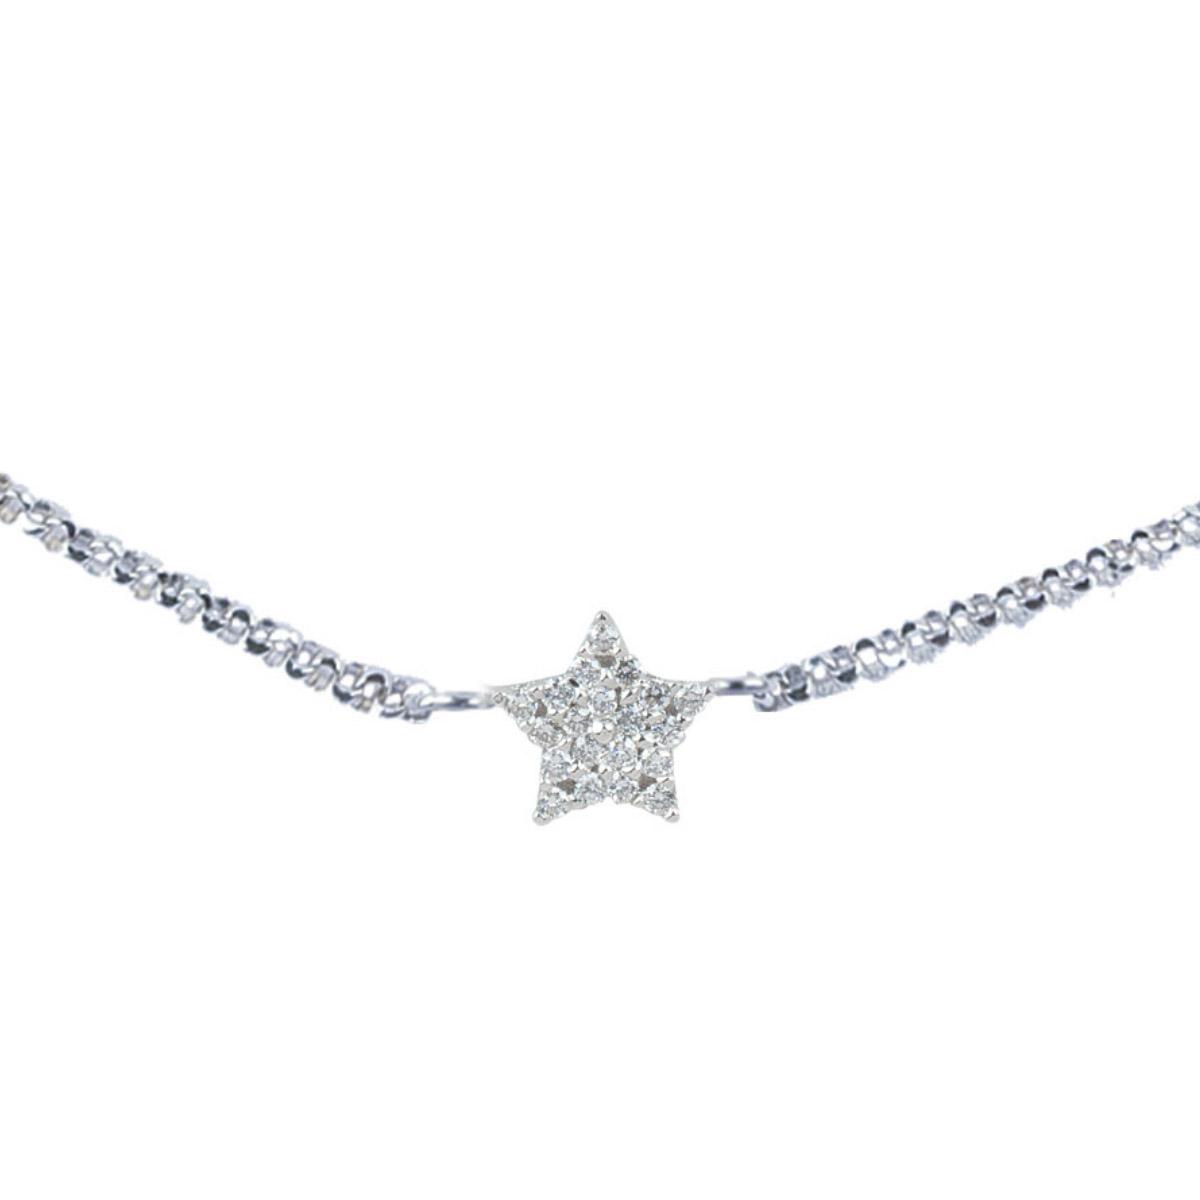 18 kt white gold star bracelet with pavé diamonds - BD121-LB